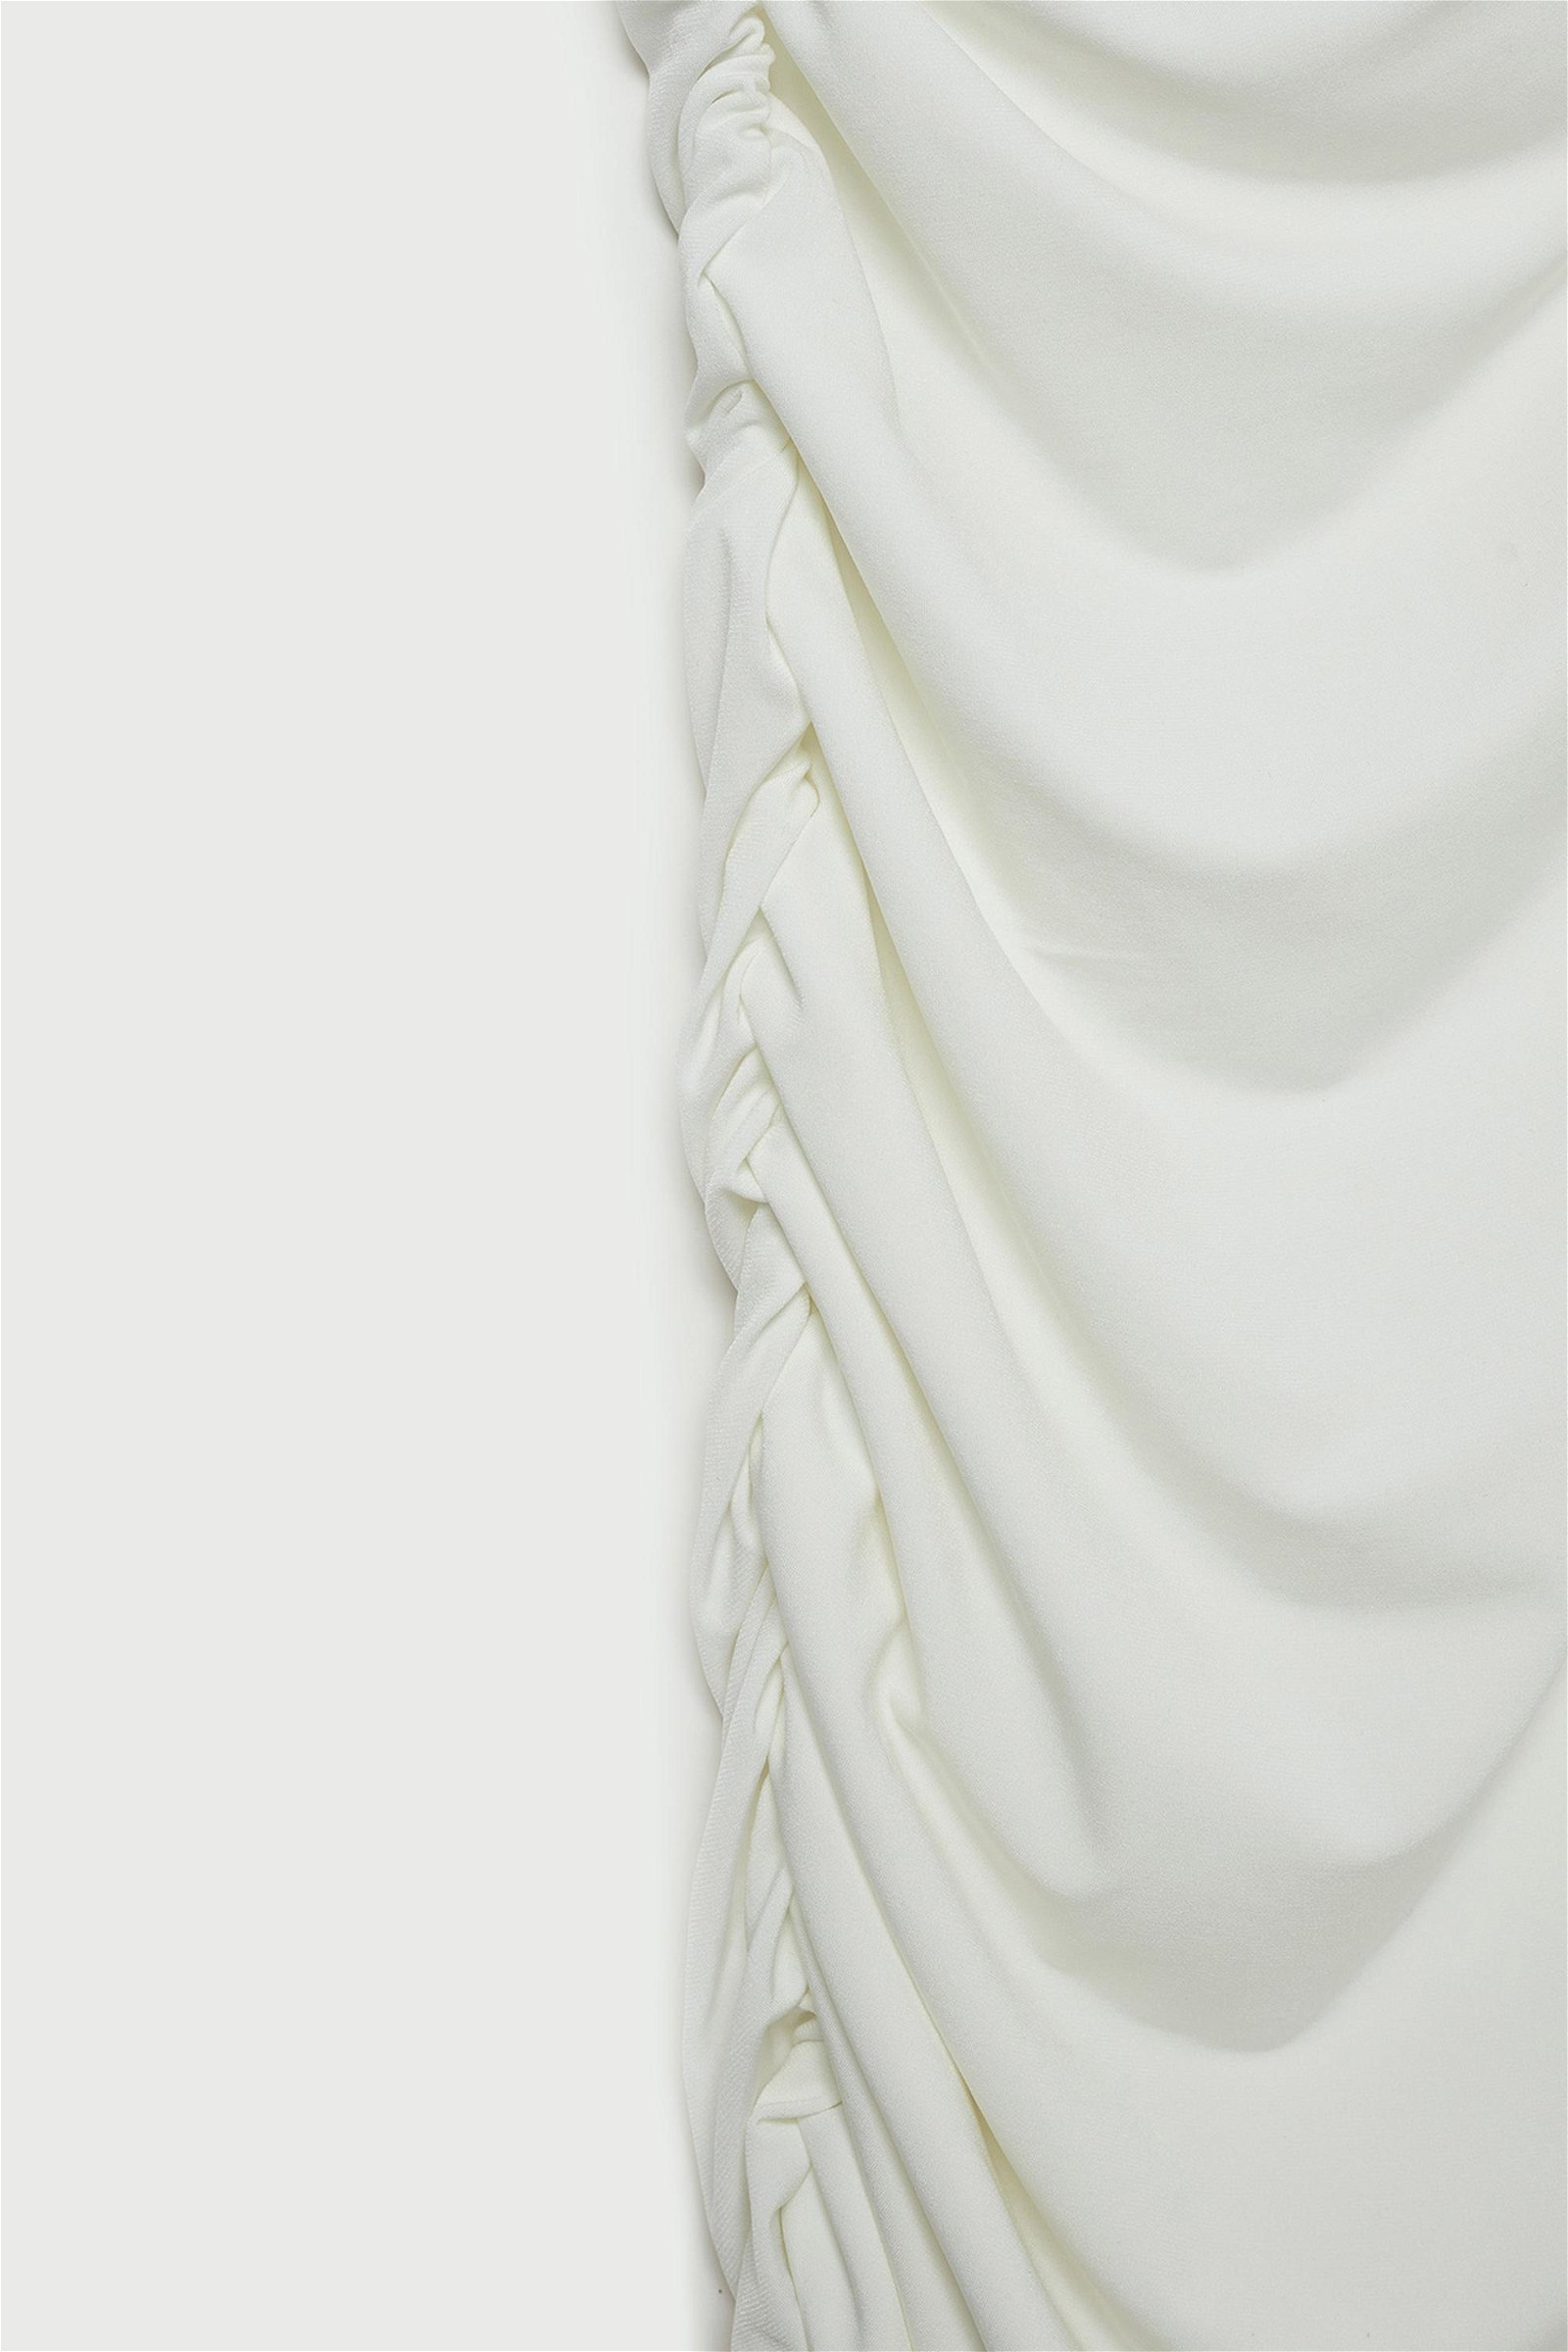 Vatkalı Kadın Limited Edition Drapeli Elbise Beyaz Beyaz